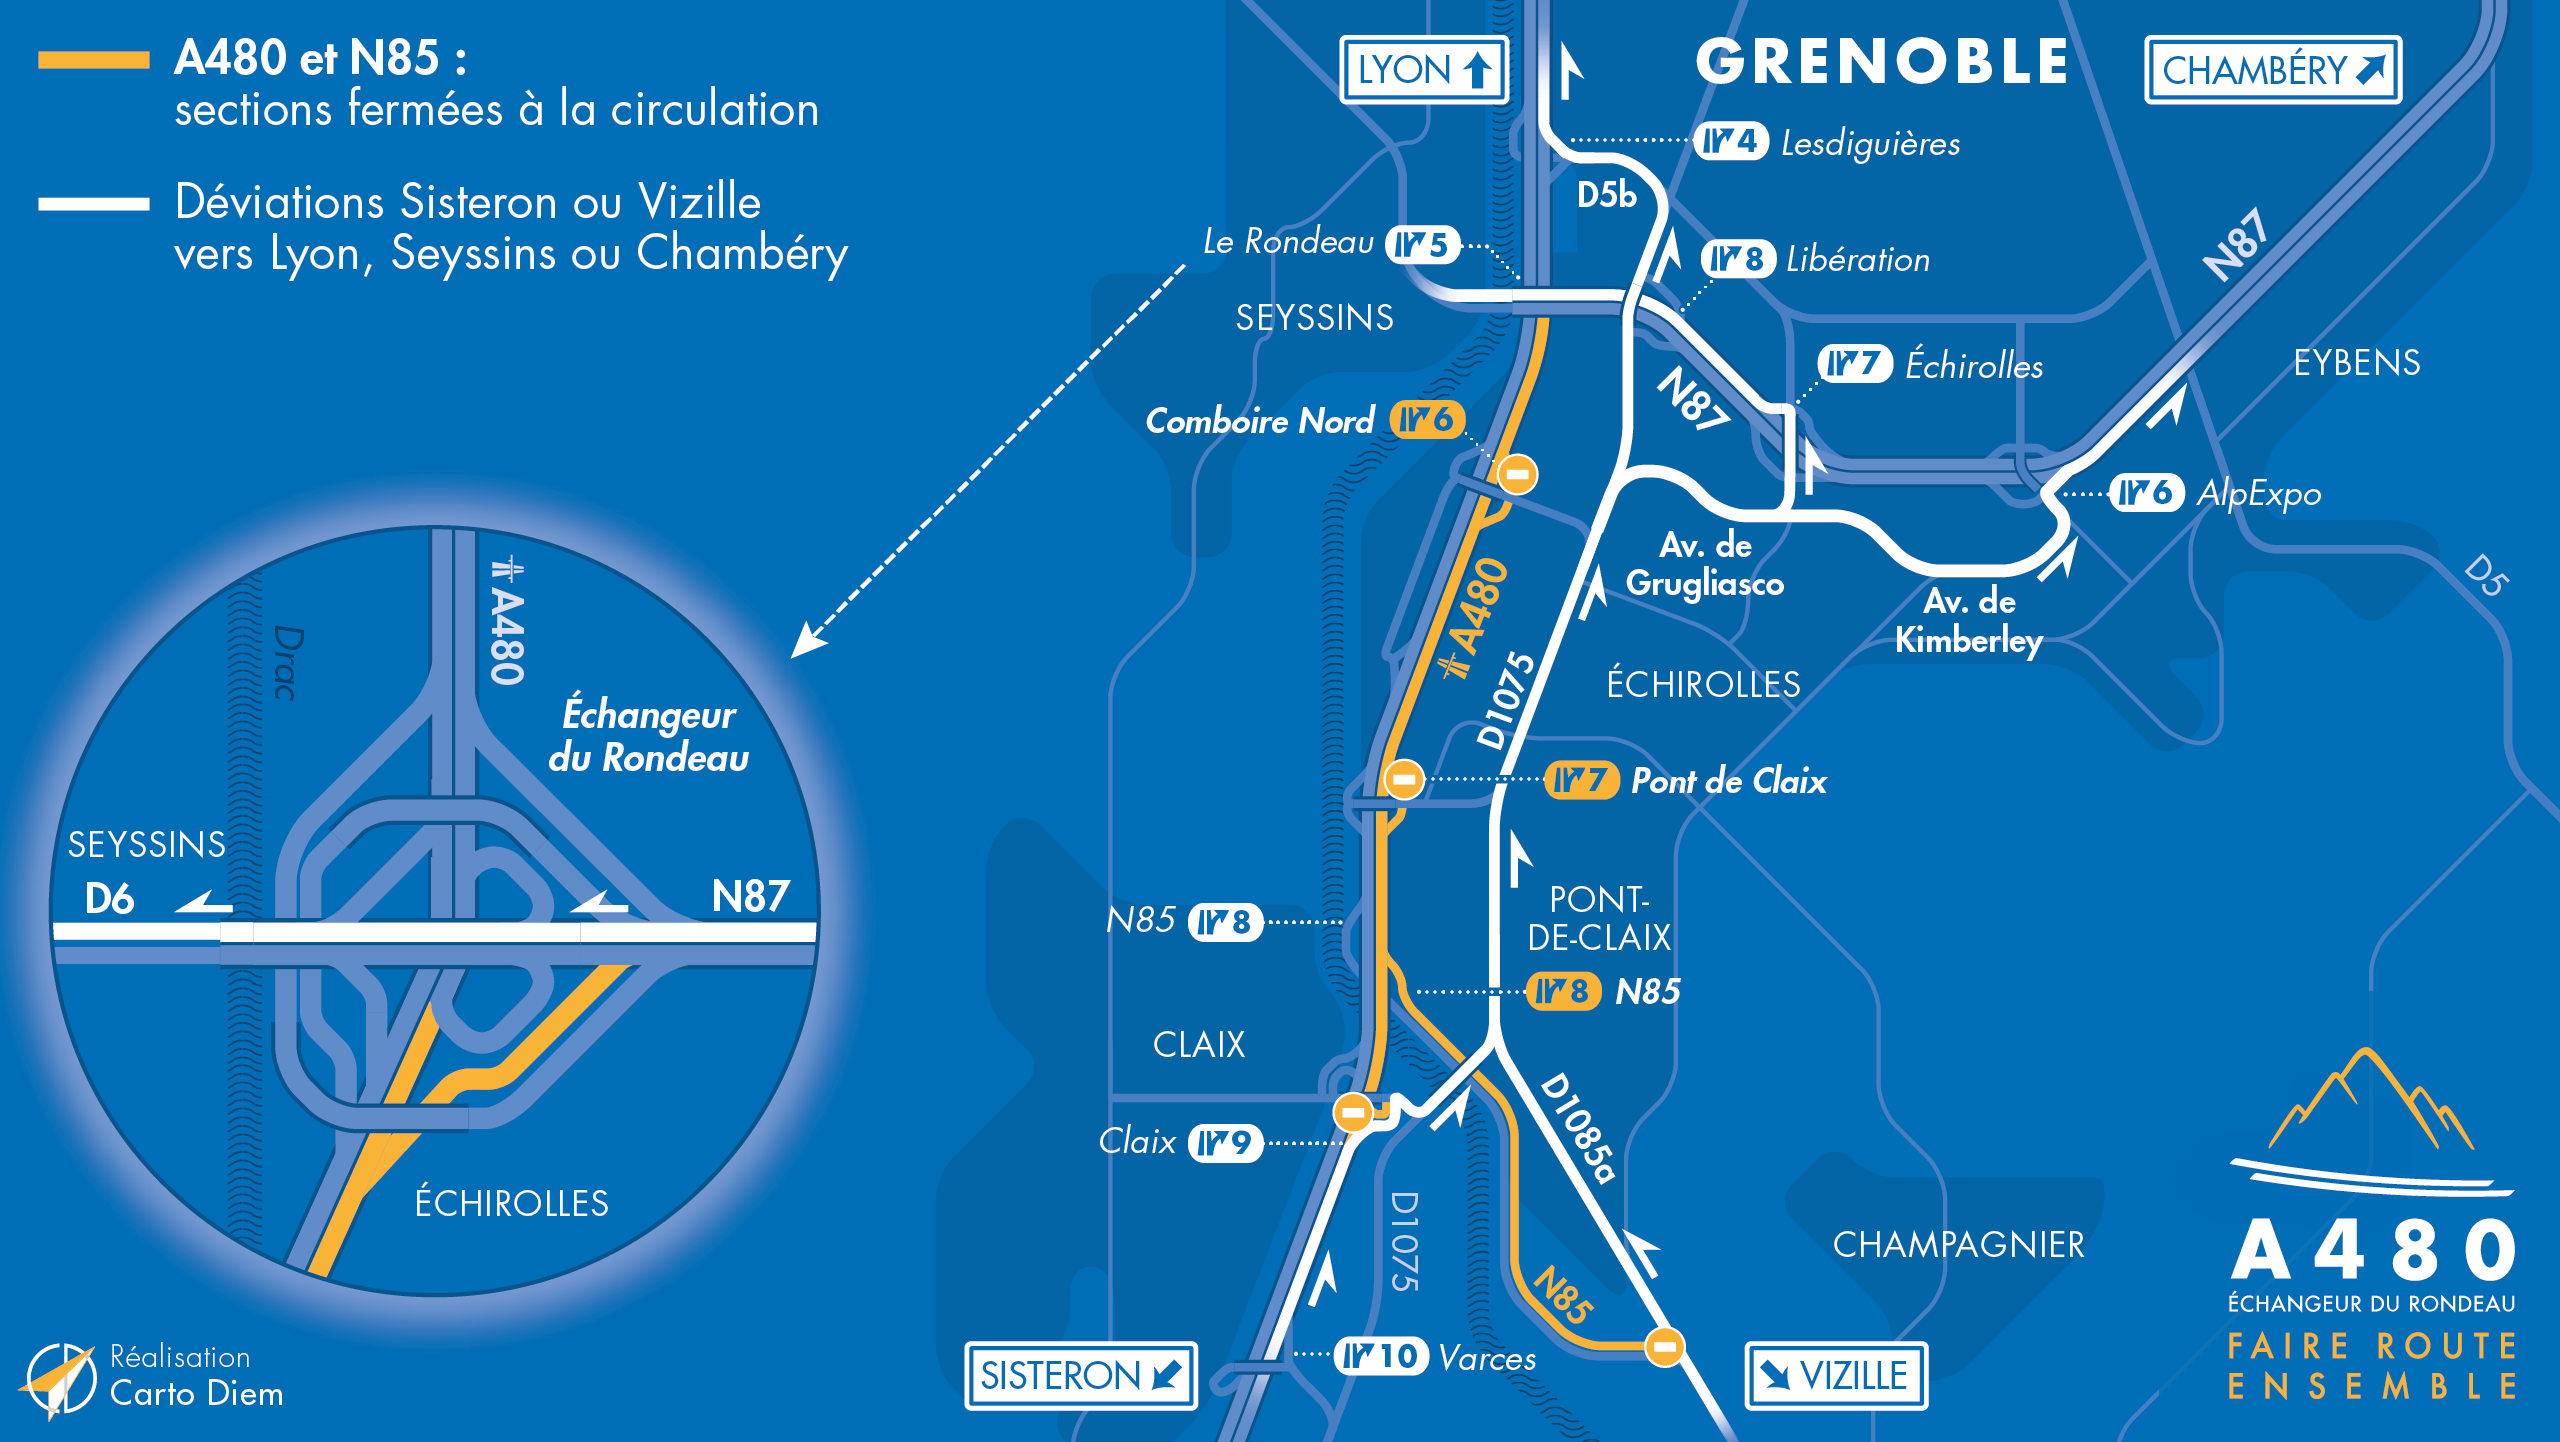 Carte de déviation suite à la fermeture de l'autoroute A480 et la nationale N85 entre Claix et le Rondeau en direction de Lyon